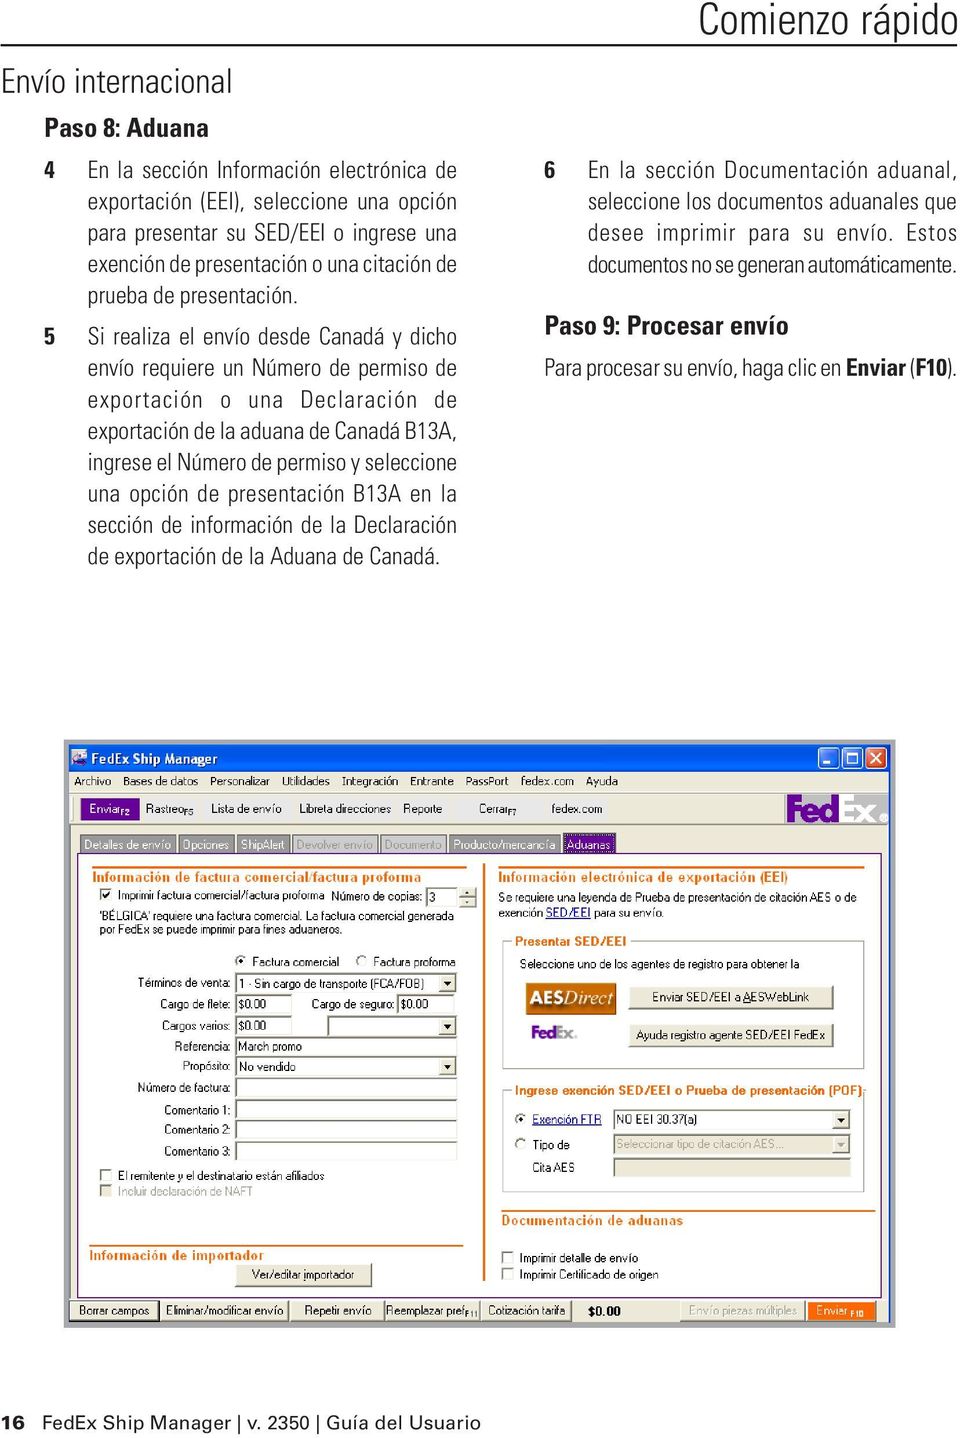 5 Si realiza el envío desde Canadá y dicho envío requiere un Número de permiso de exportación o una Declaración de exportación de la aduana de Canadá B13A, ingrese el Número de permiso y seleccione